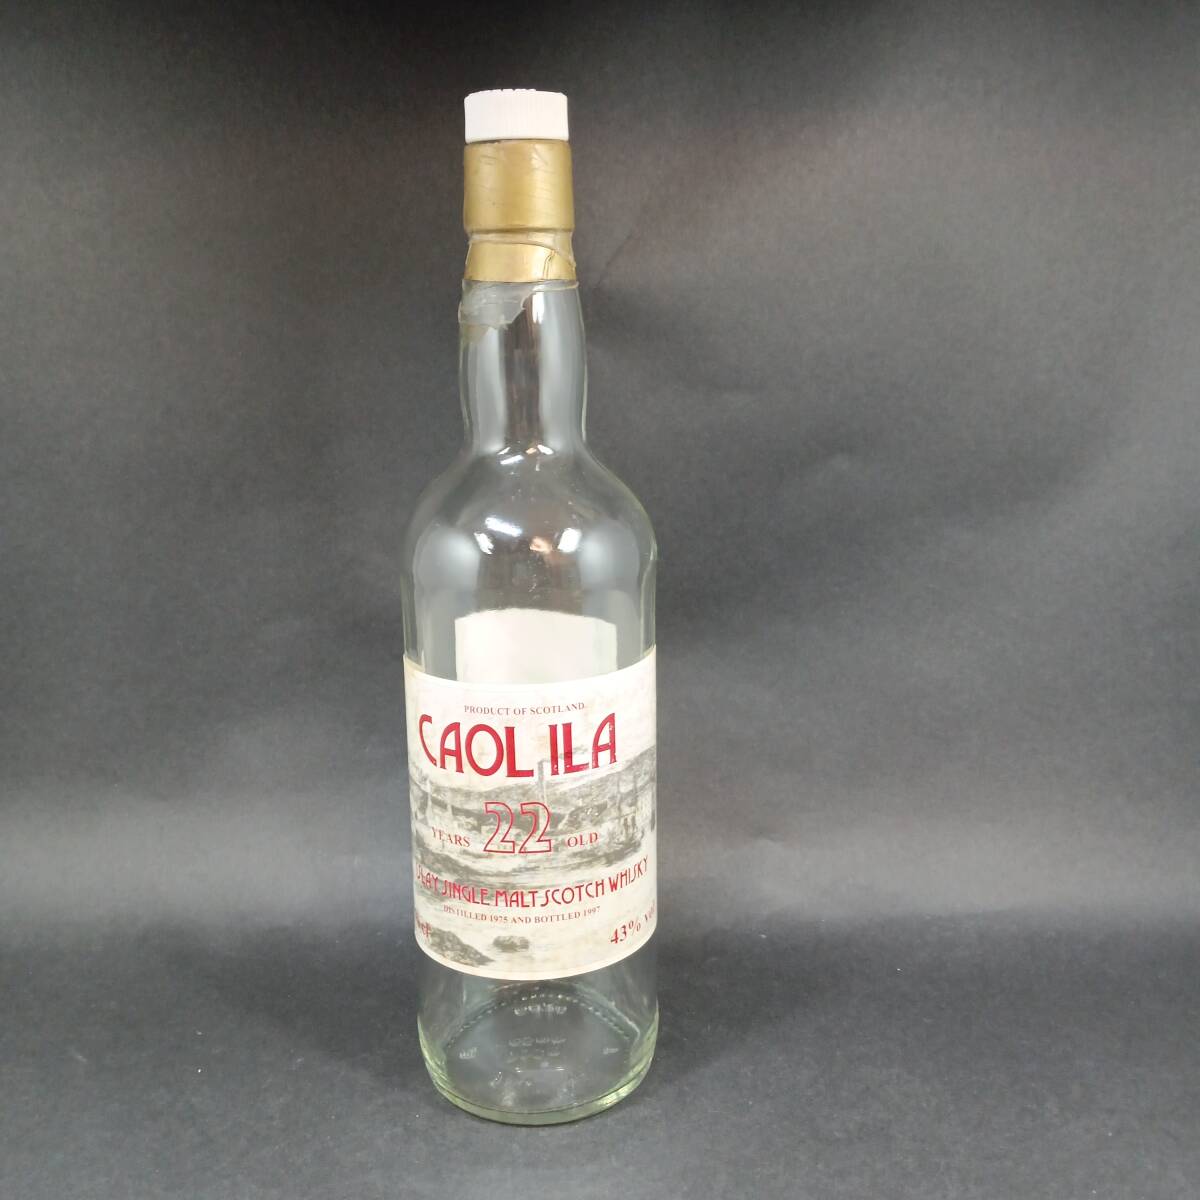 ◆カリラ CAOLILA 22年 GM 空ボトル 空 瓶◆KAS32018の画像1